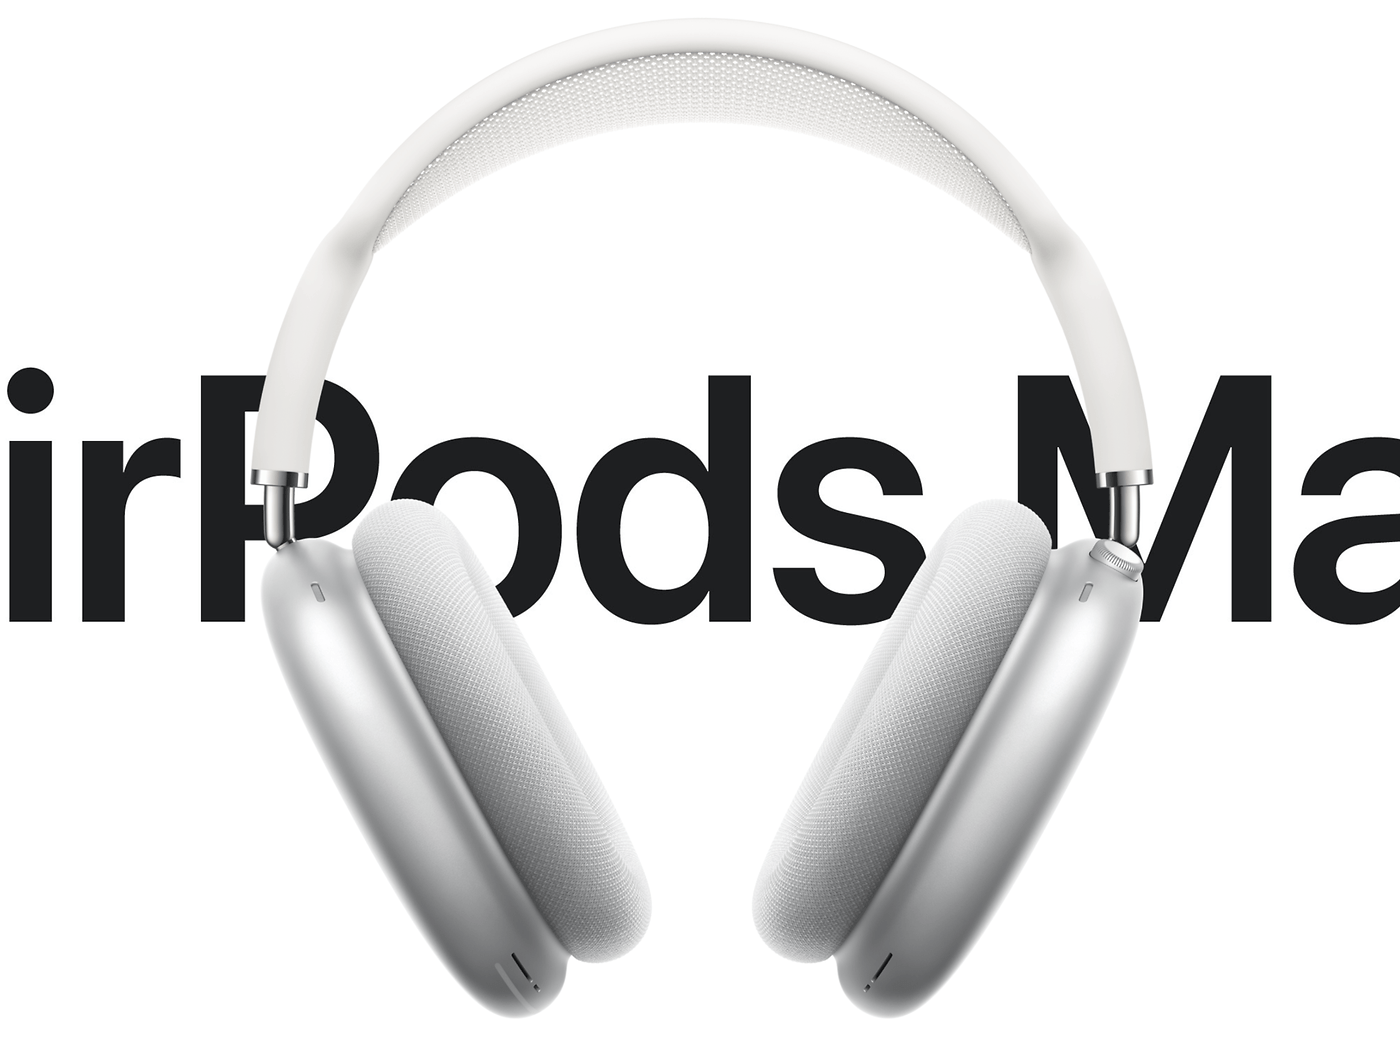 AirPods Max : fiche technique, prix et avis sur le casque d'Apple